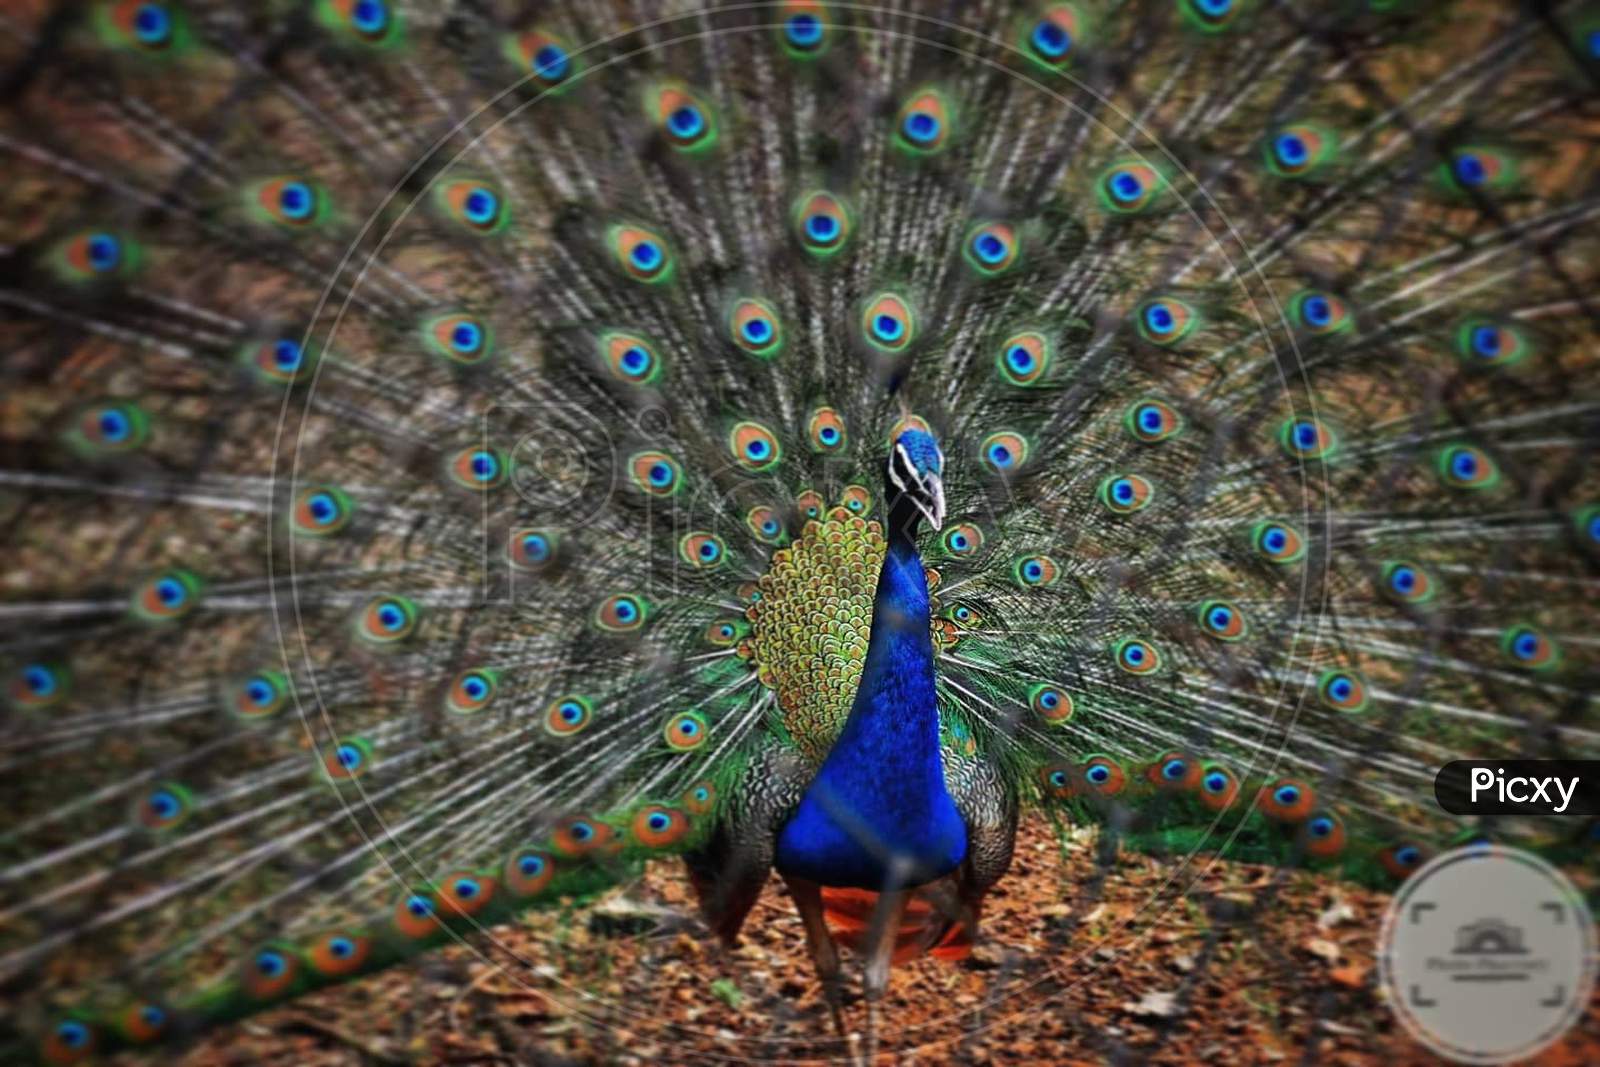 Beautiful Peacock shot at a Zoo